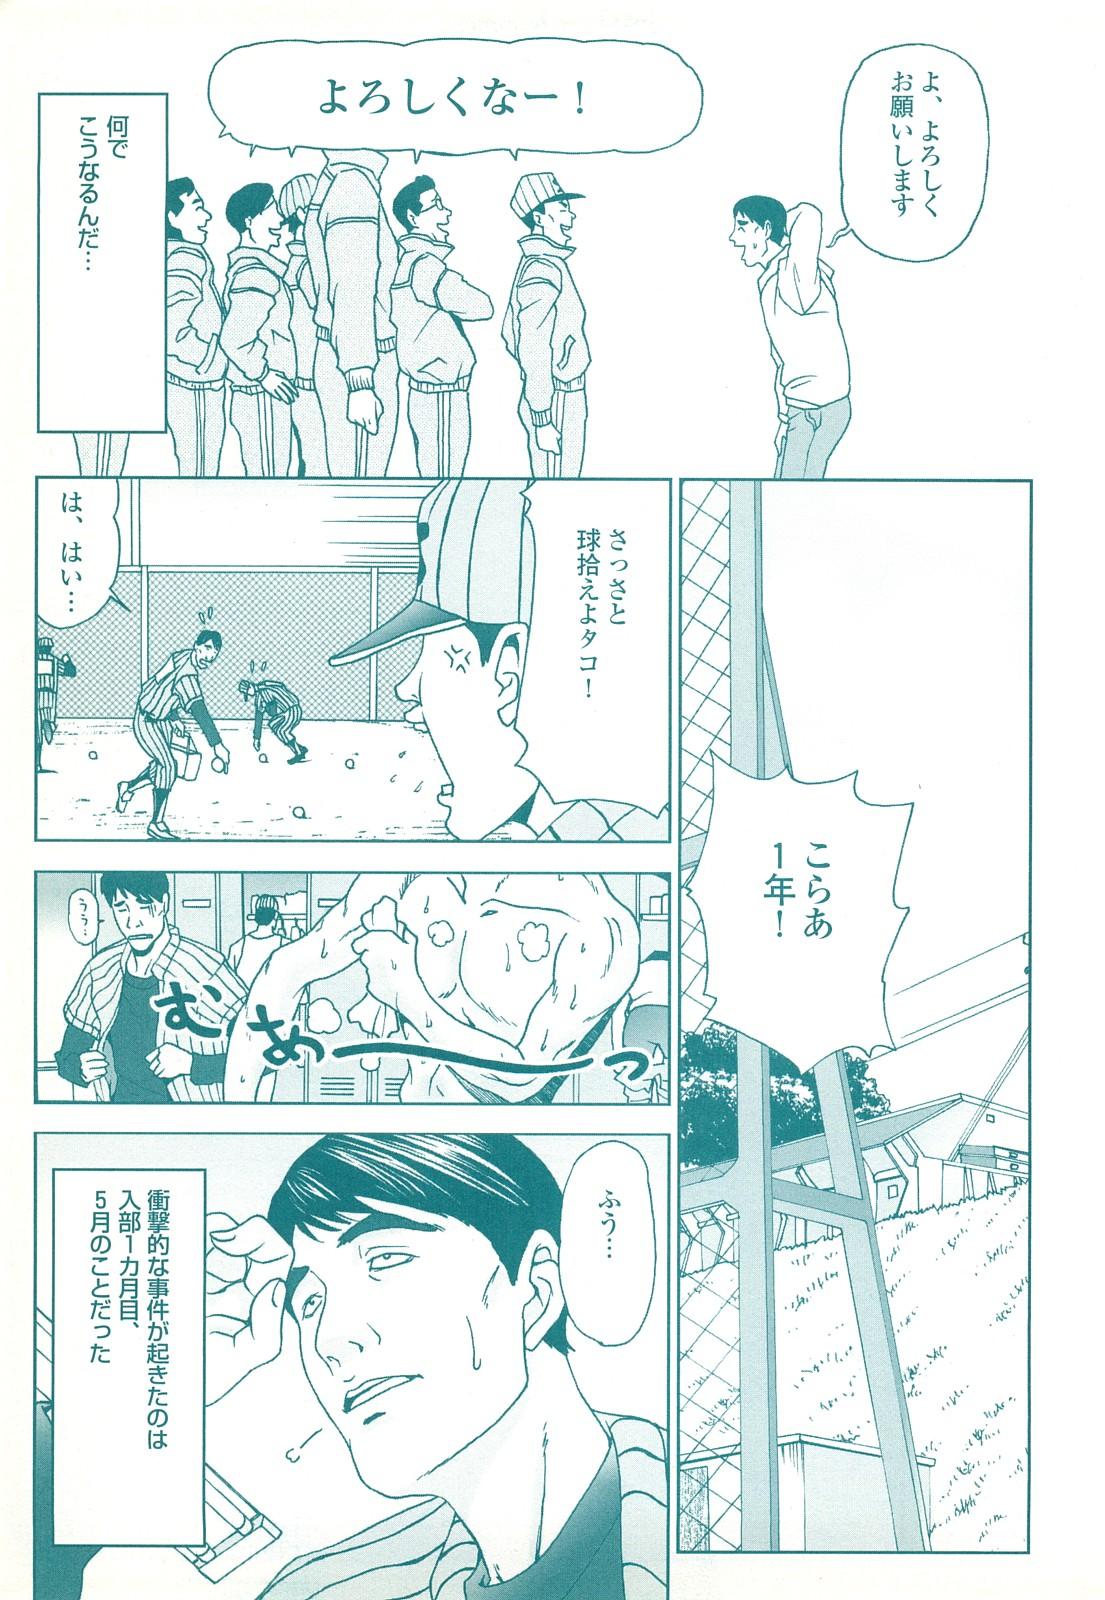 コミック裏モノJAPAN Vol.18 今井のりたつスペシャル号 146